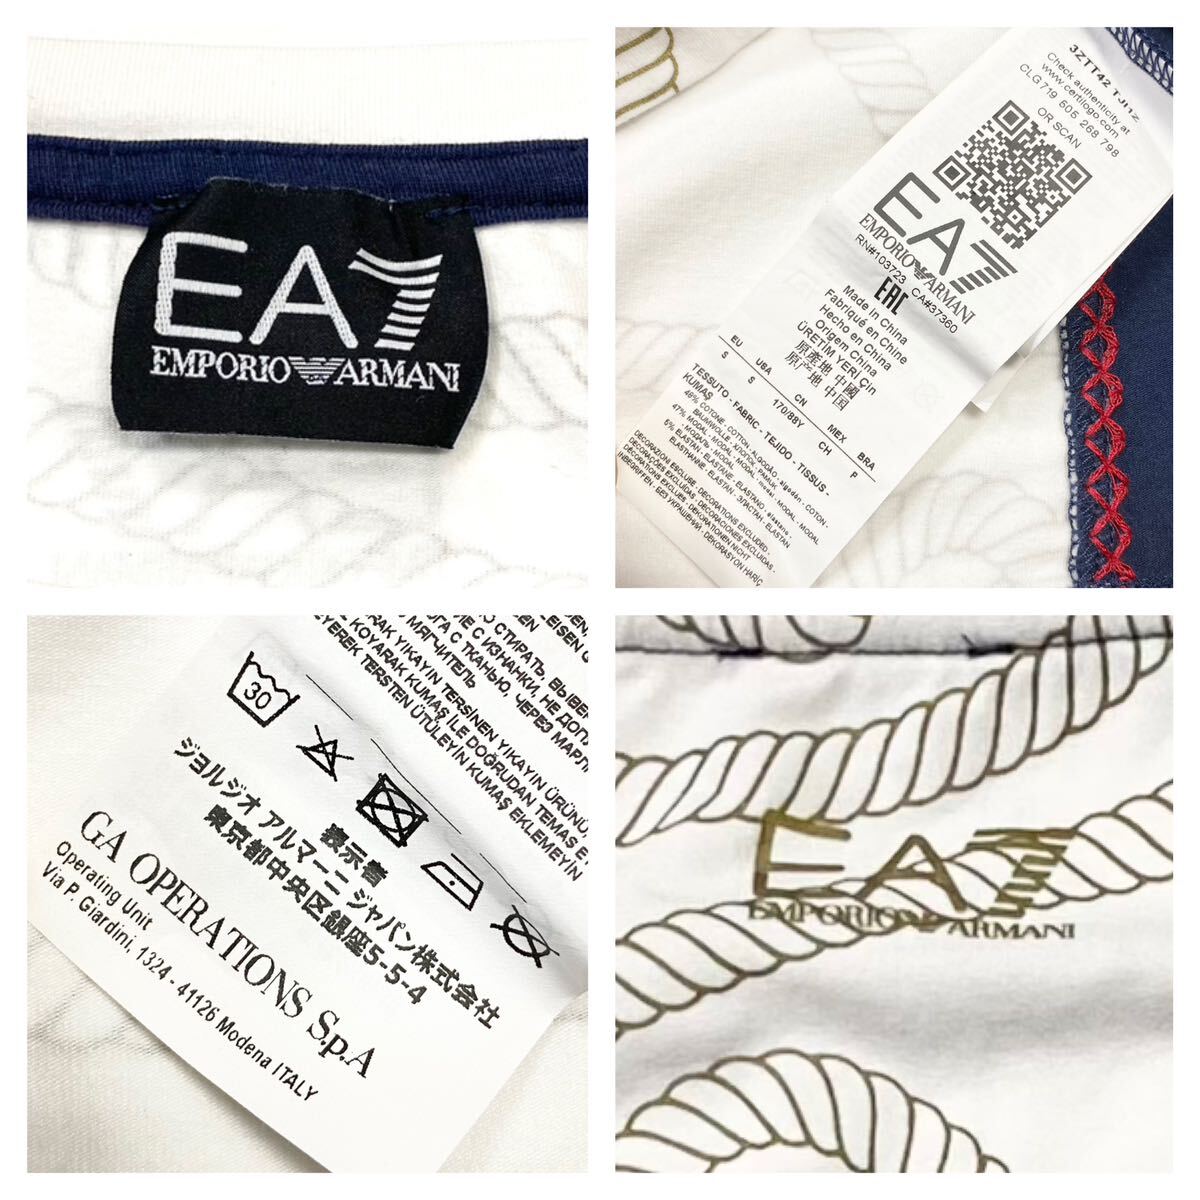 EA7/エンポリオアルマーニ Tシャツ メンズS ネイビー/ホワイト EMPORIO ARMANI トップス の画像2